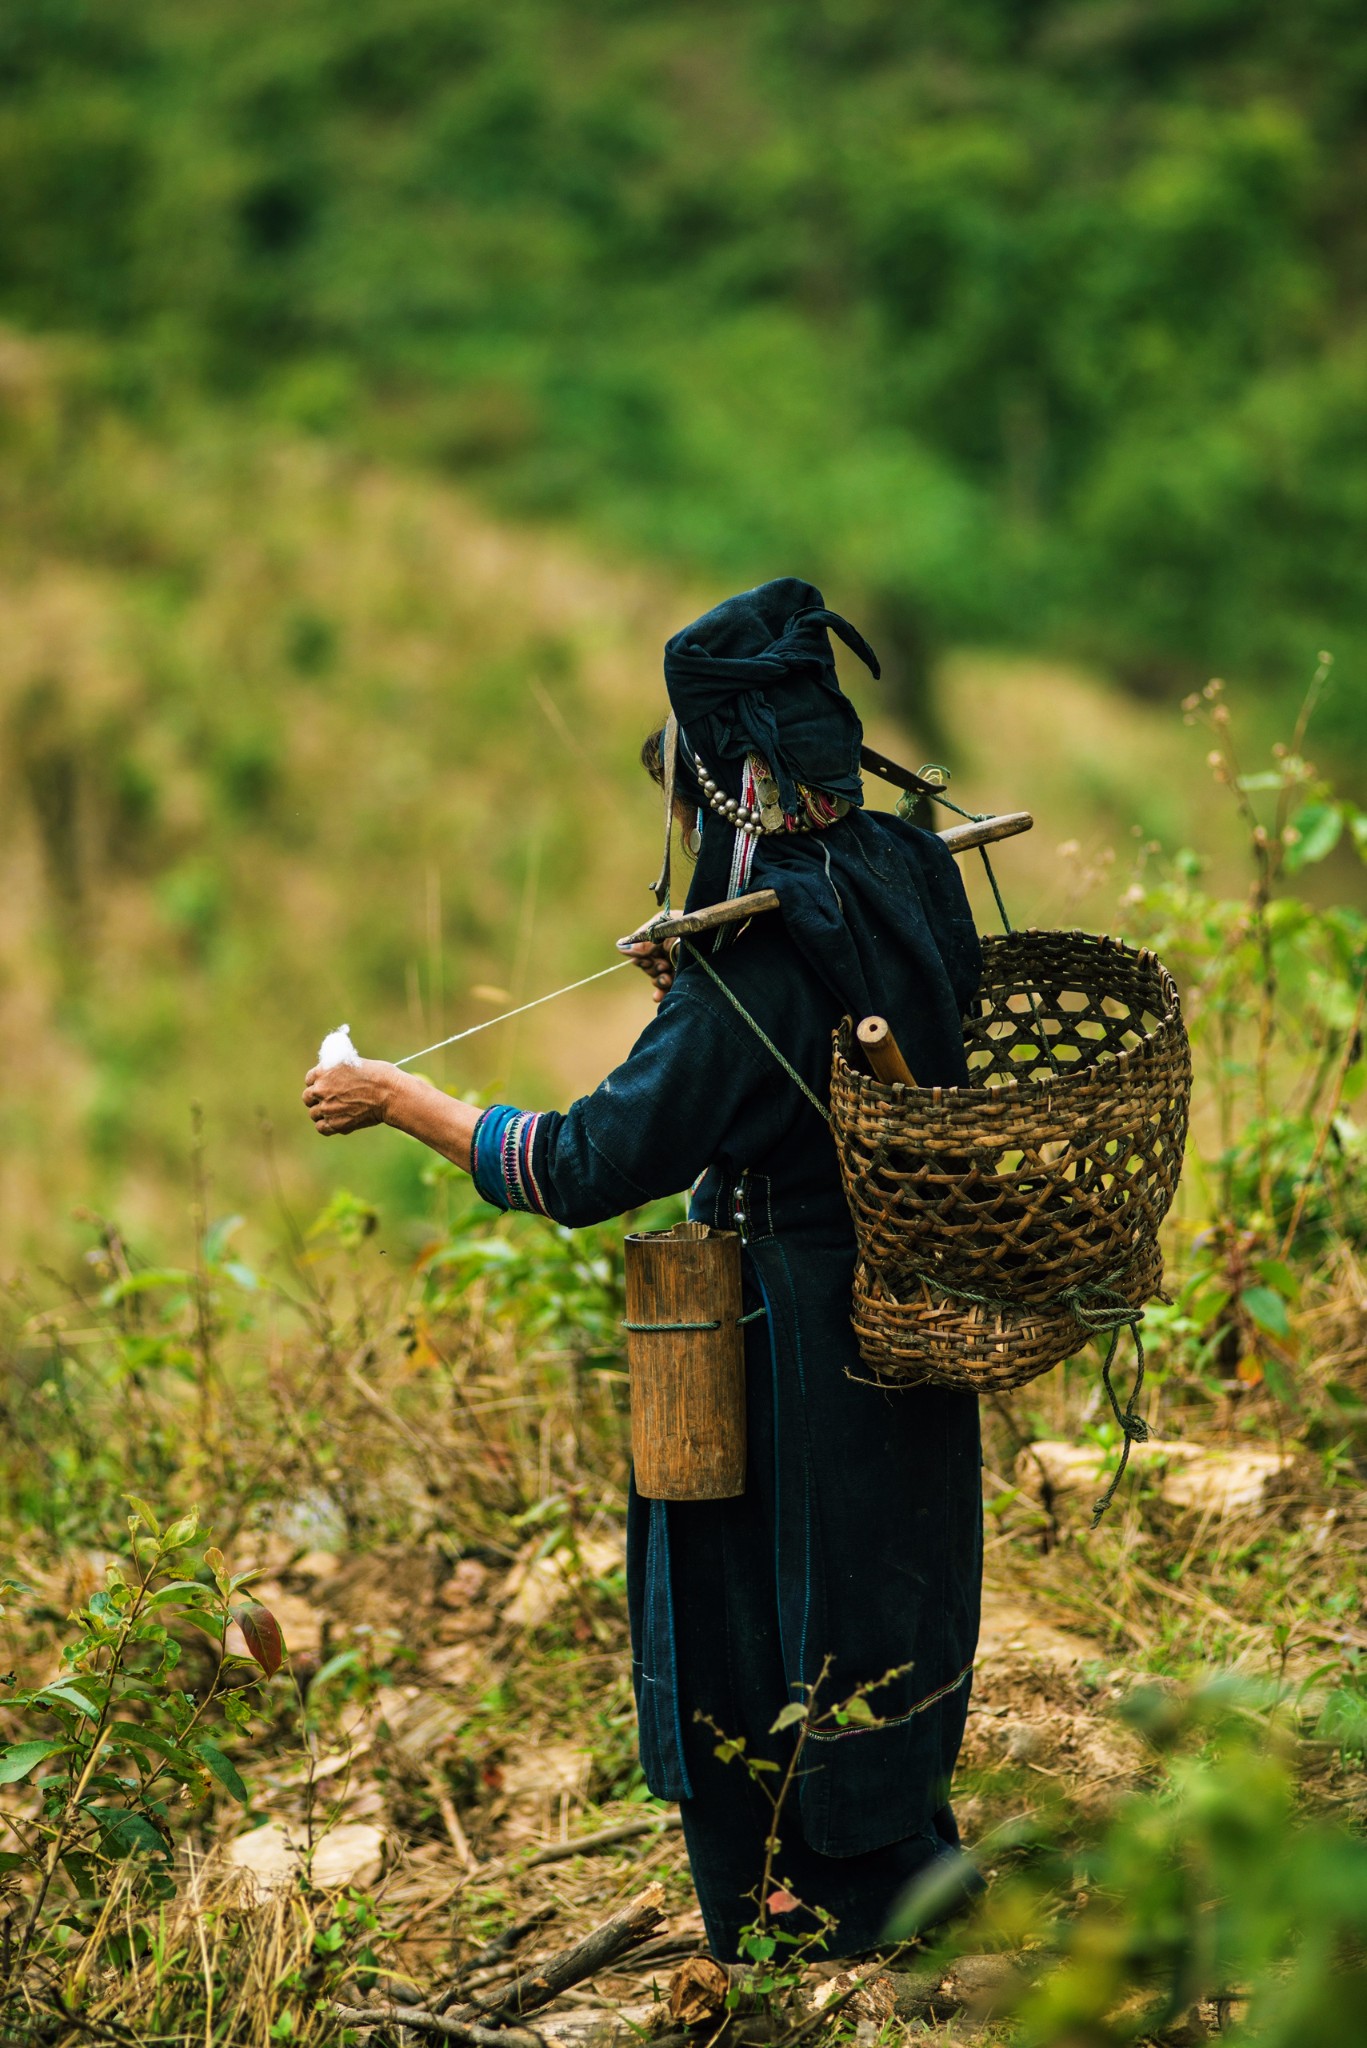 老挝丰沙里阿卡族图片